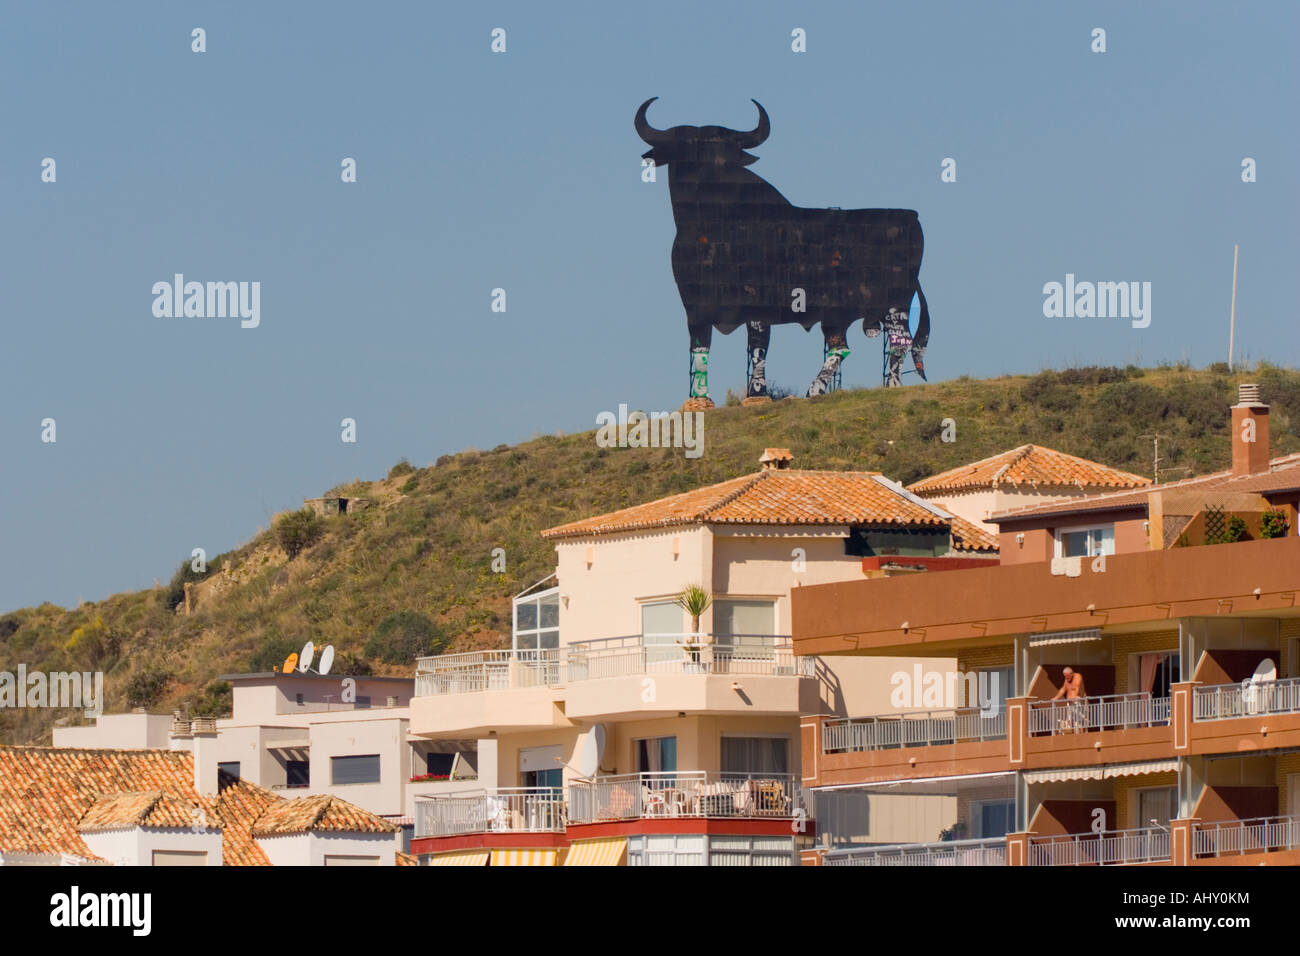 Fuengirola Malaga Provinz Costa del Sol Spanien An Osborne schwarzen Stier über der Stadt Stockfoto